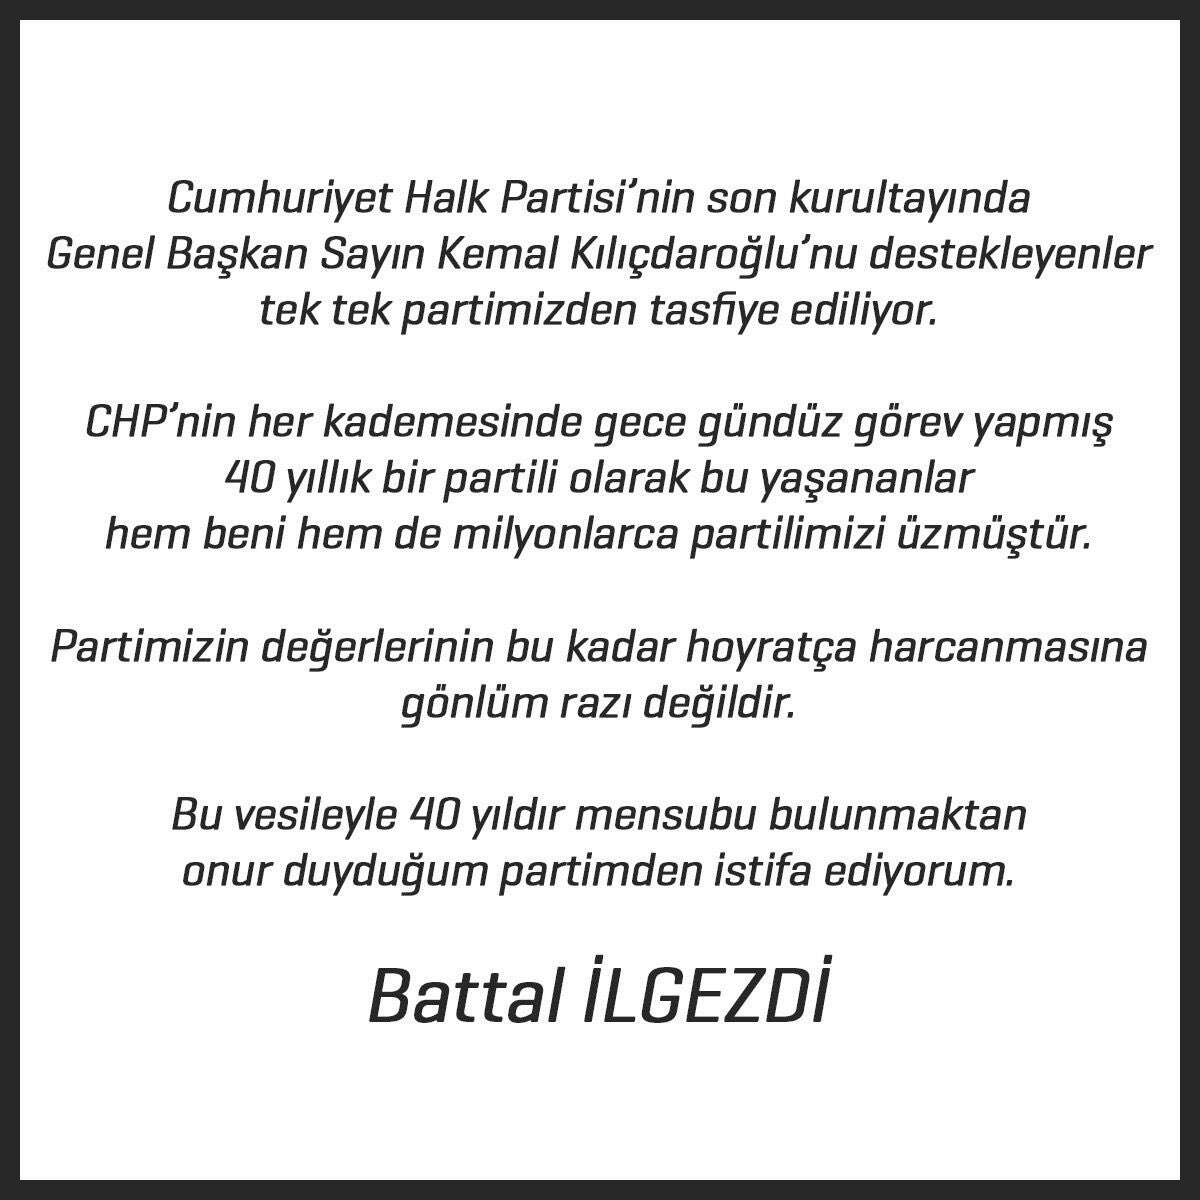 CHP'den şok istifa! Ataşehir Belediye Başkanı Battal İlgezdi istifa etti